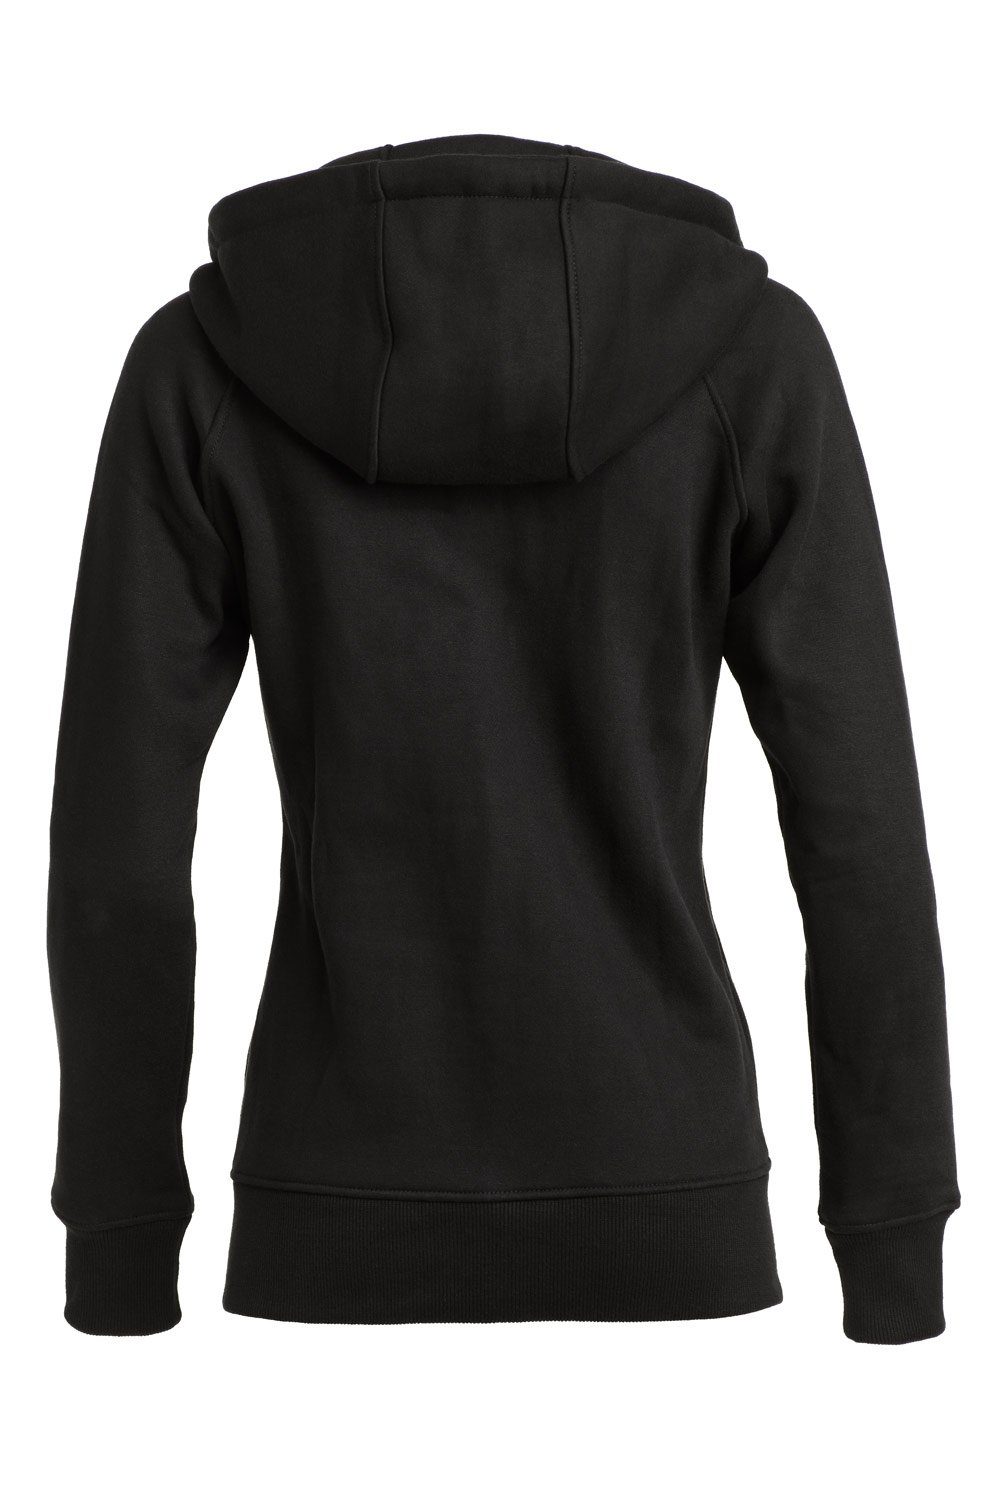 Street Trainingsjacke schwarz Hoodie-Jacke J005 Winshape Style